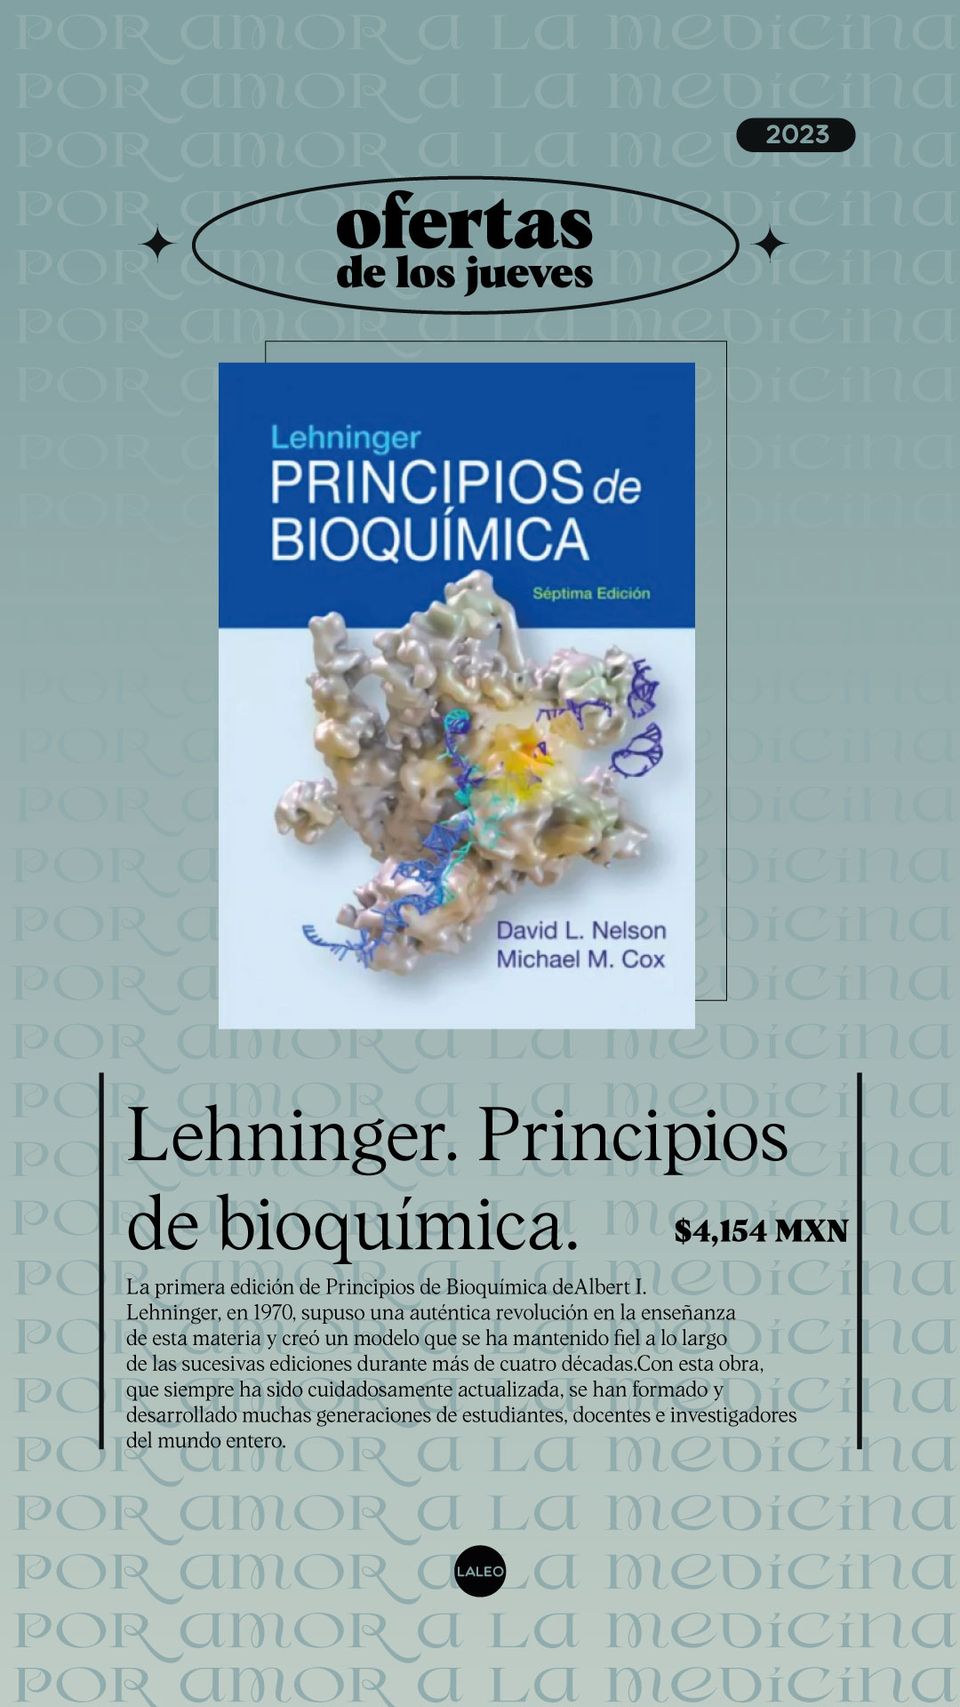 Lehninger. Principios de bioquímica